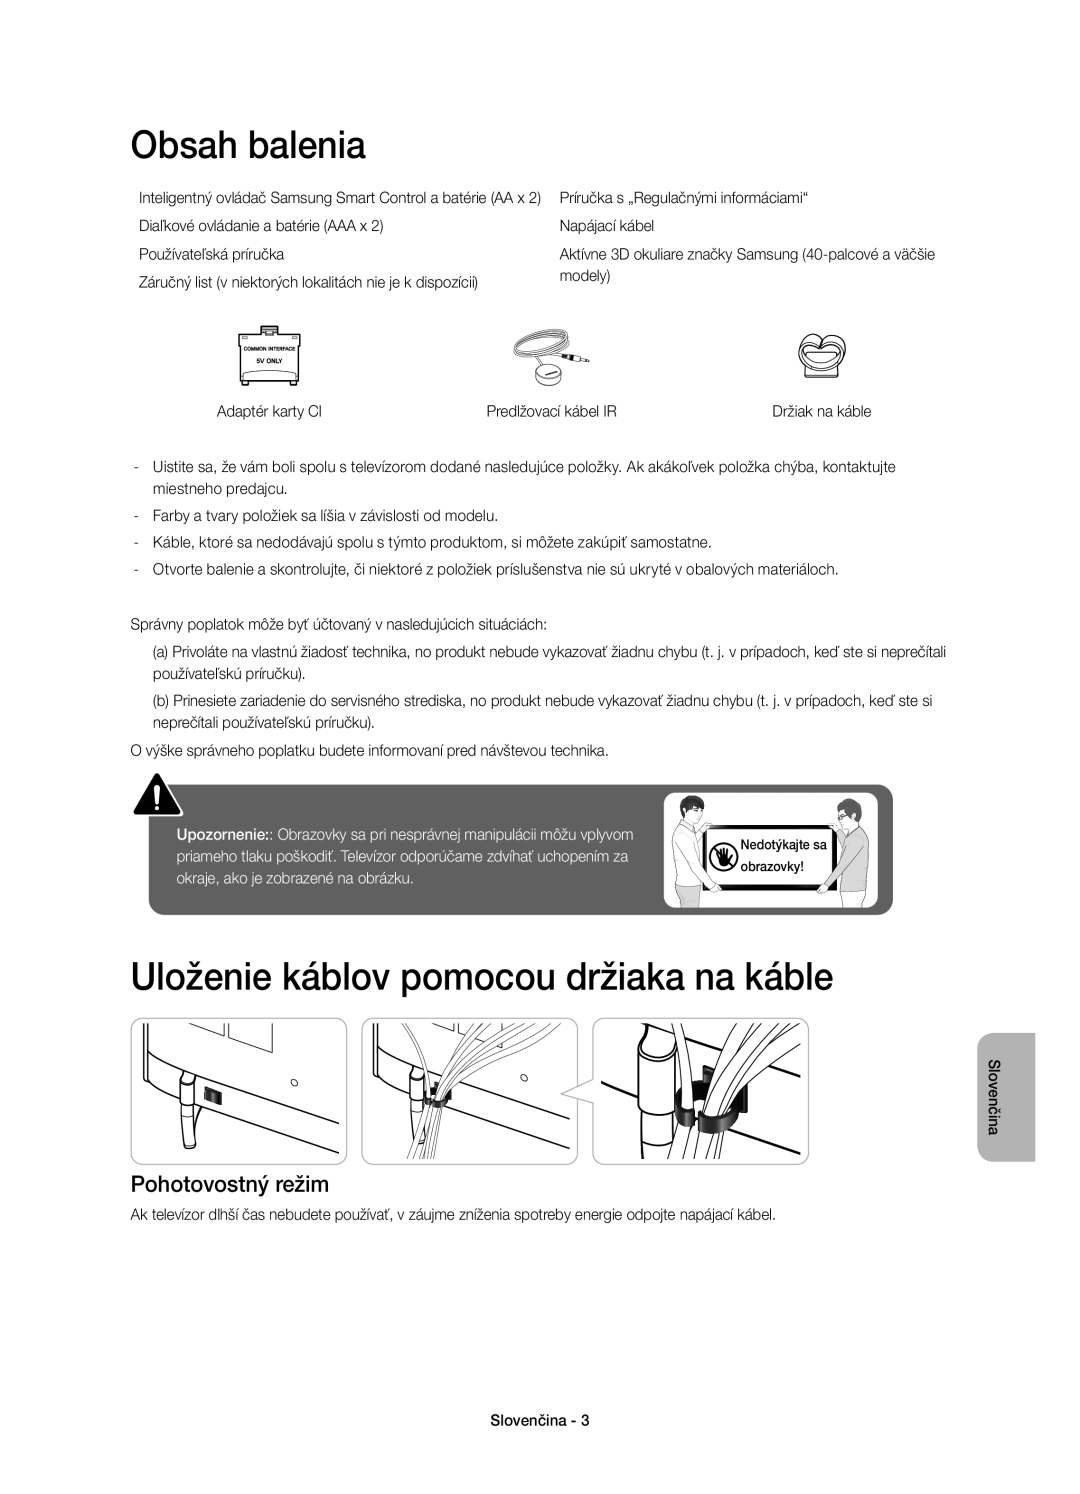 Samsung UE32H6410SSXZG, UE55H6410SSXXH manual Obsah balenia, Uloženie káblov pomocou držiaka na káble, Pohotovostný režim 